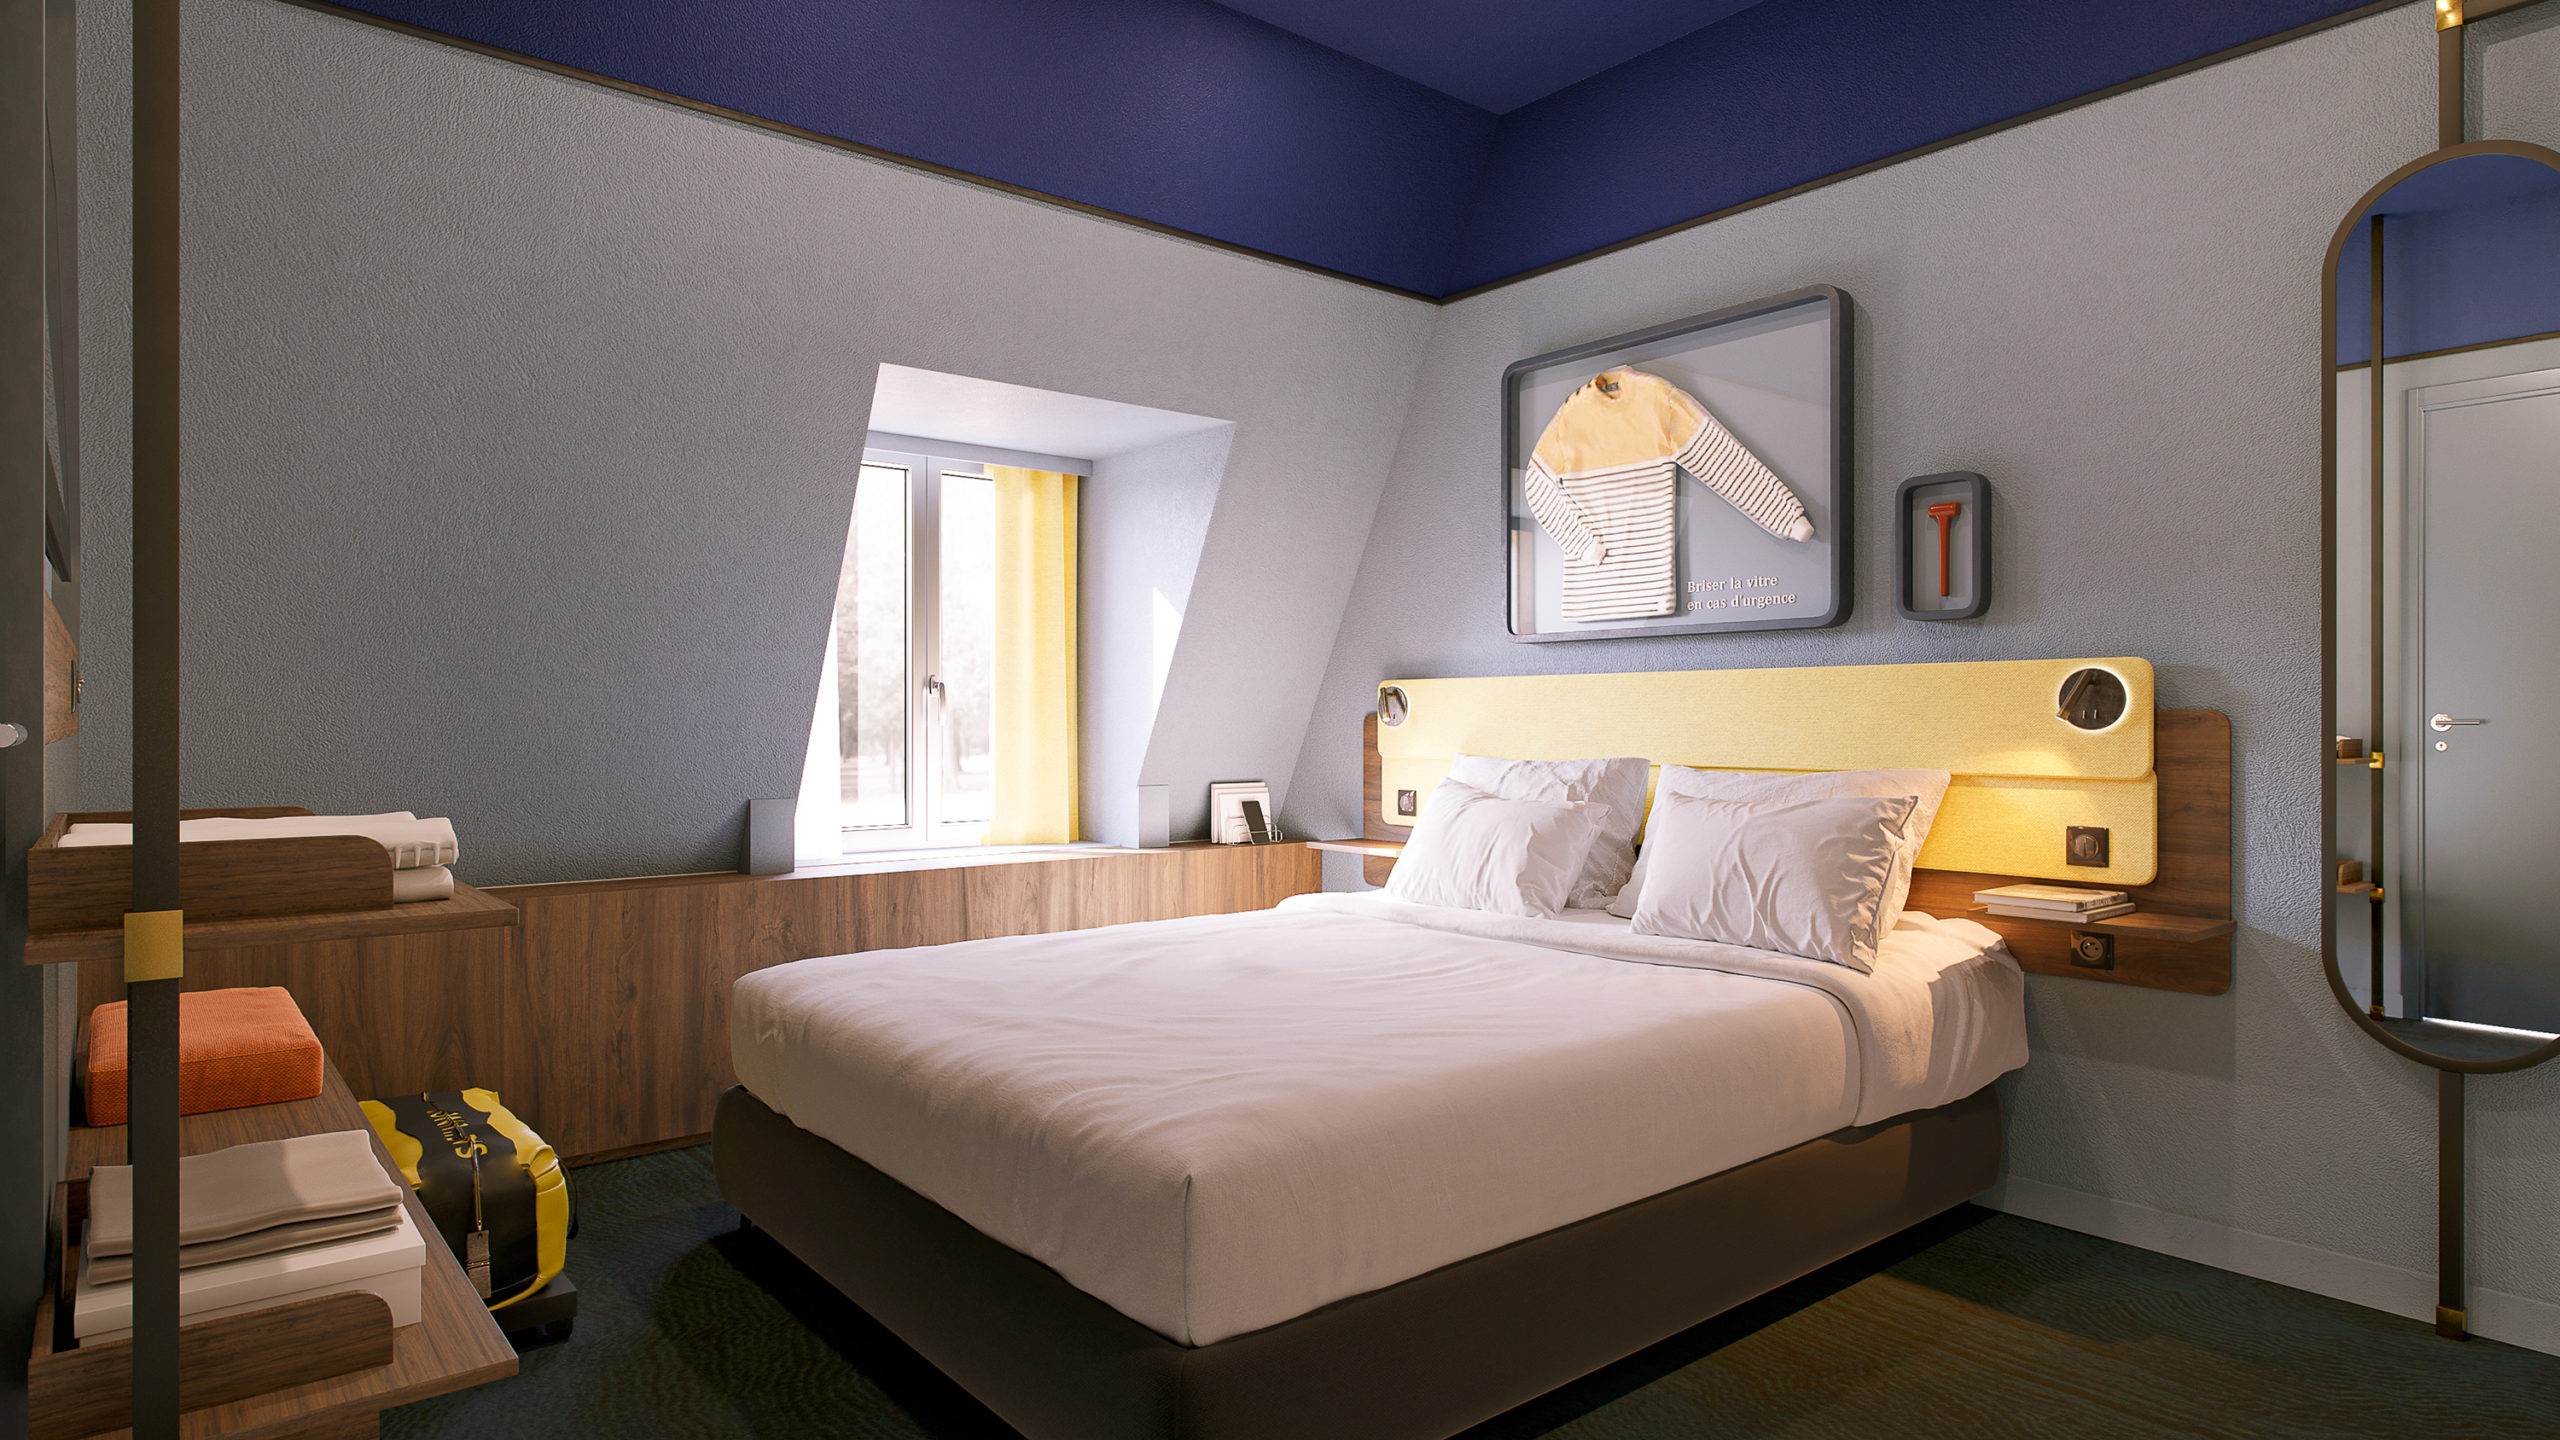 Projet de rénovation et de décoration des chambres de l'hôtel Ibis Styles de Saint Malo